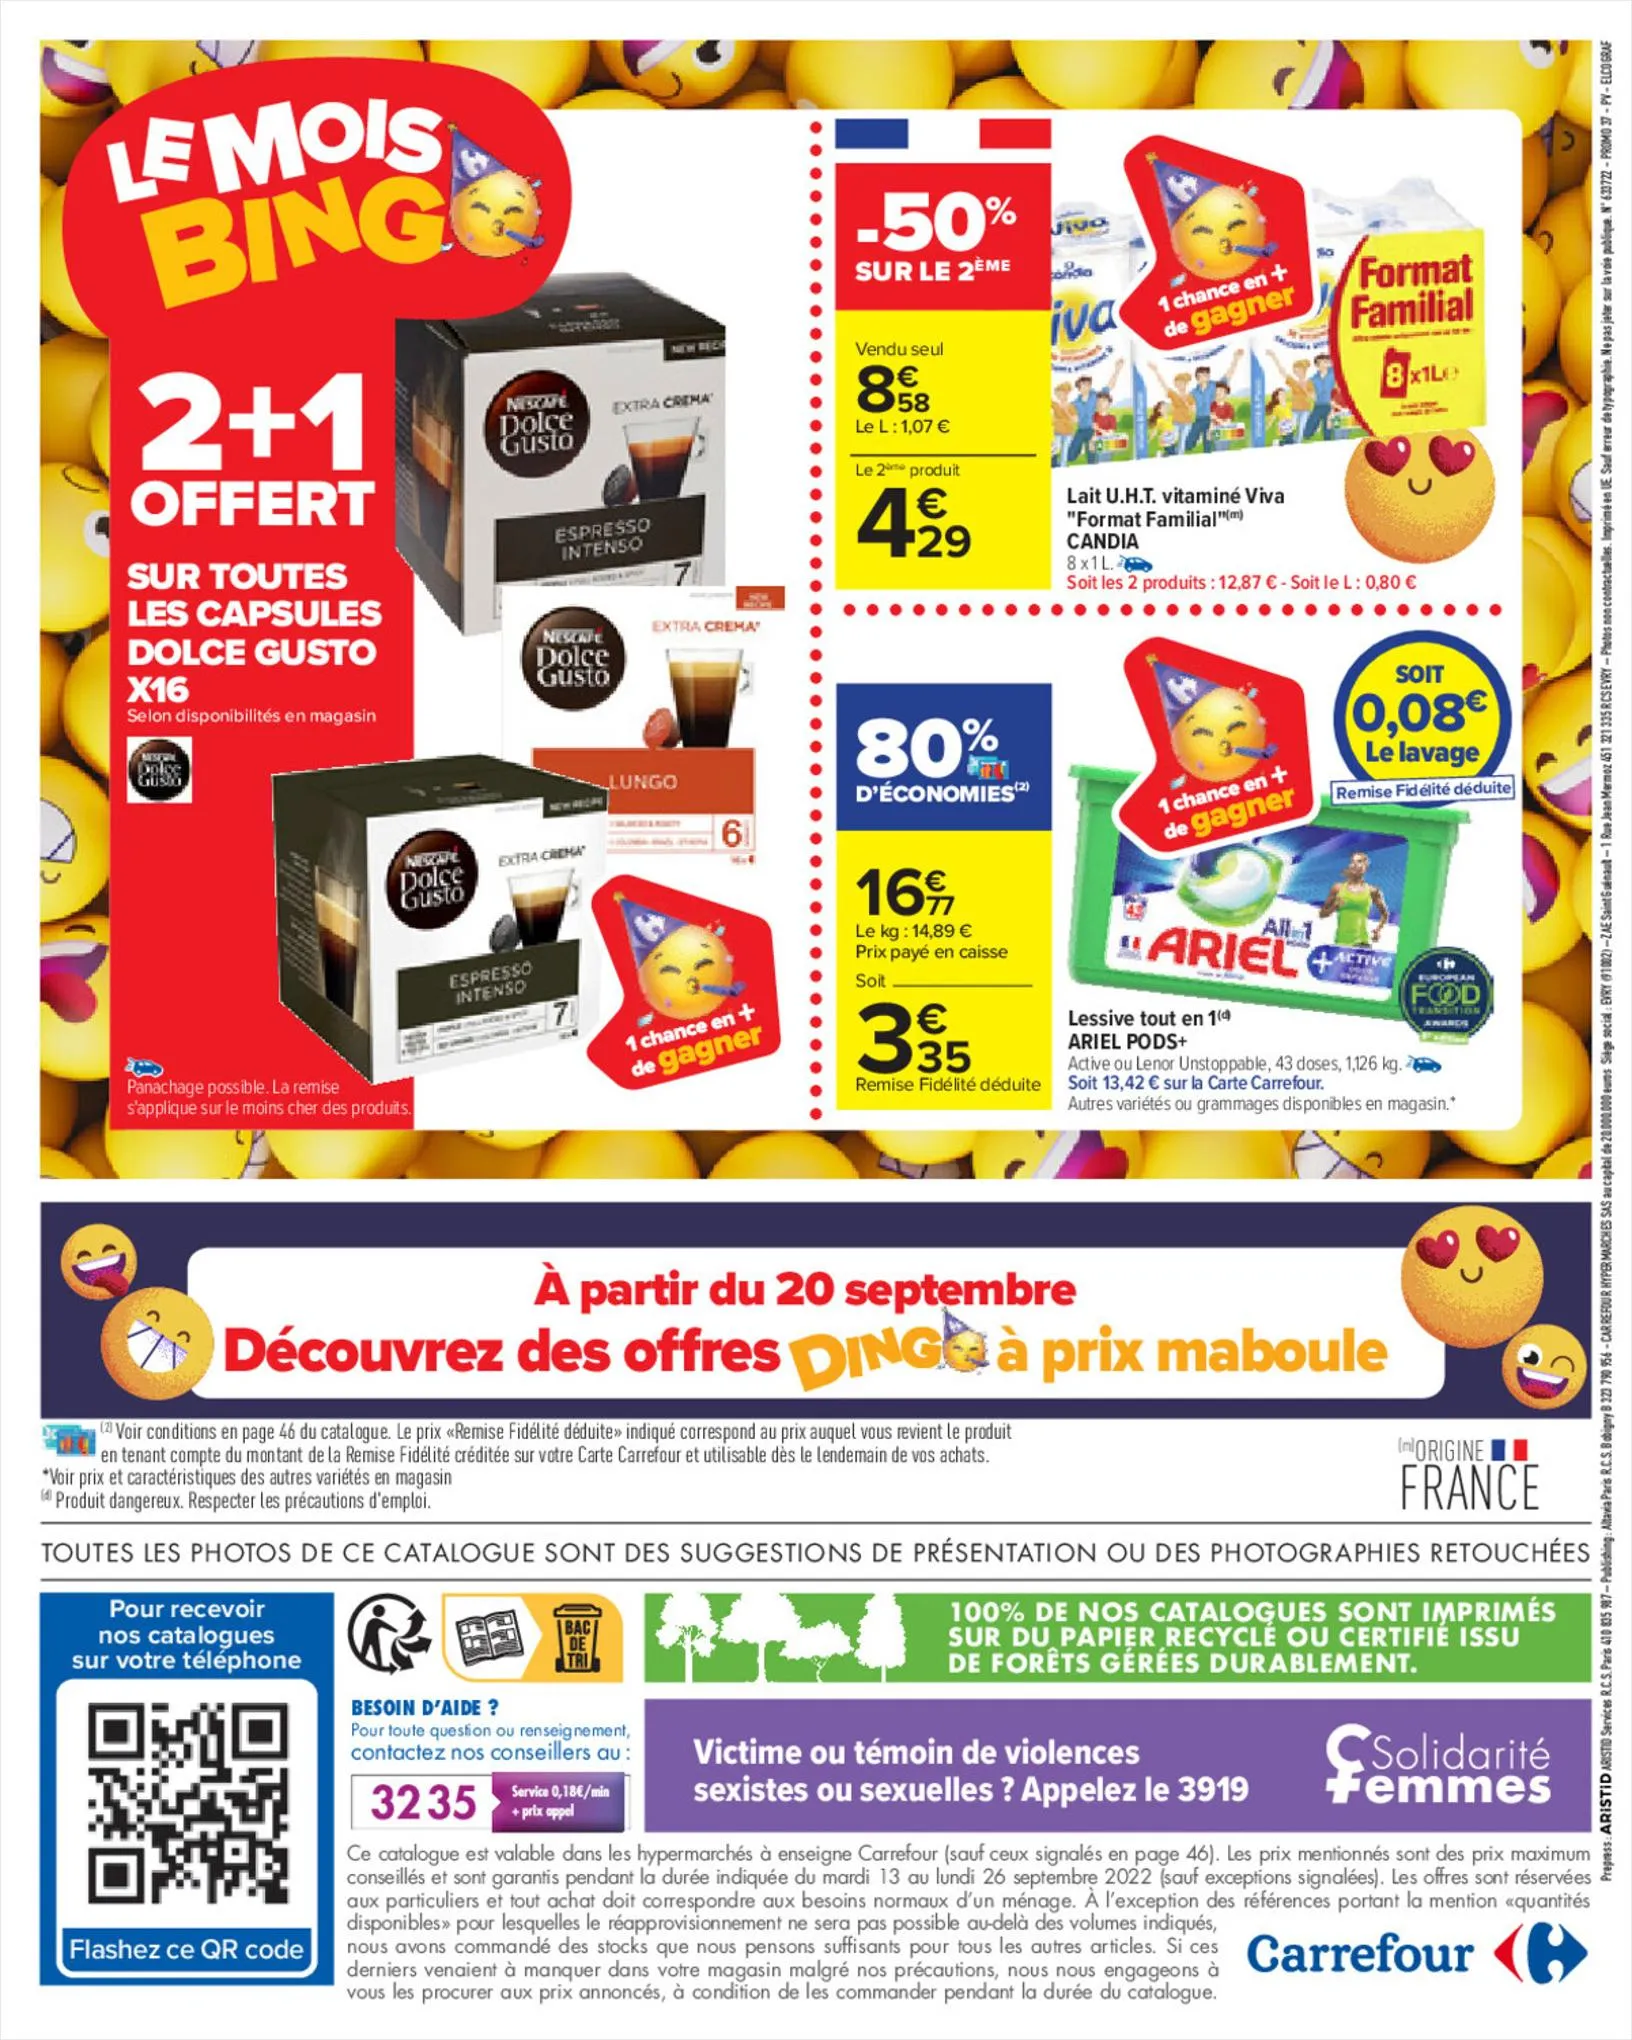 Catalogue Mois Bingo - Doublez vos euros cagnottés, page 00066